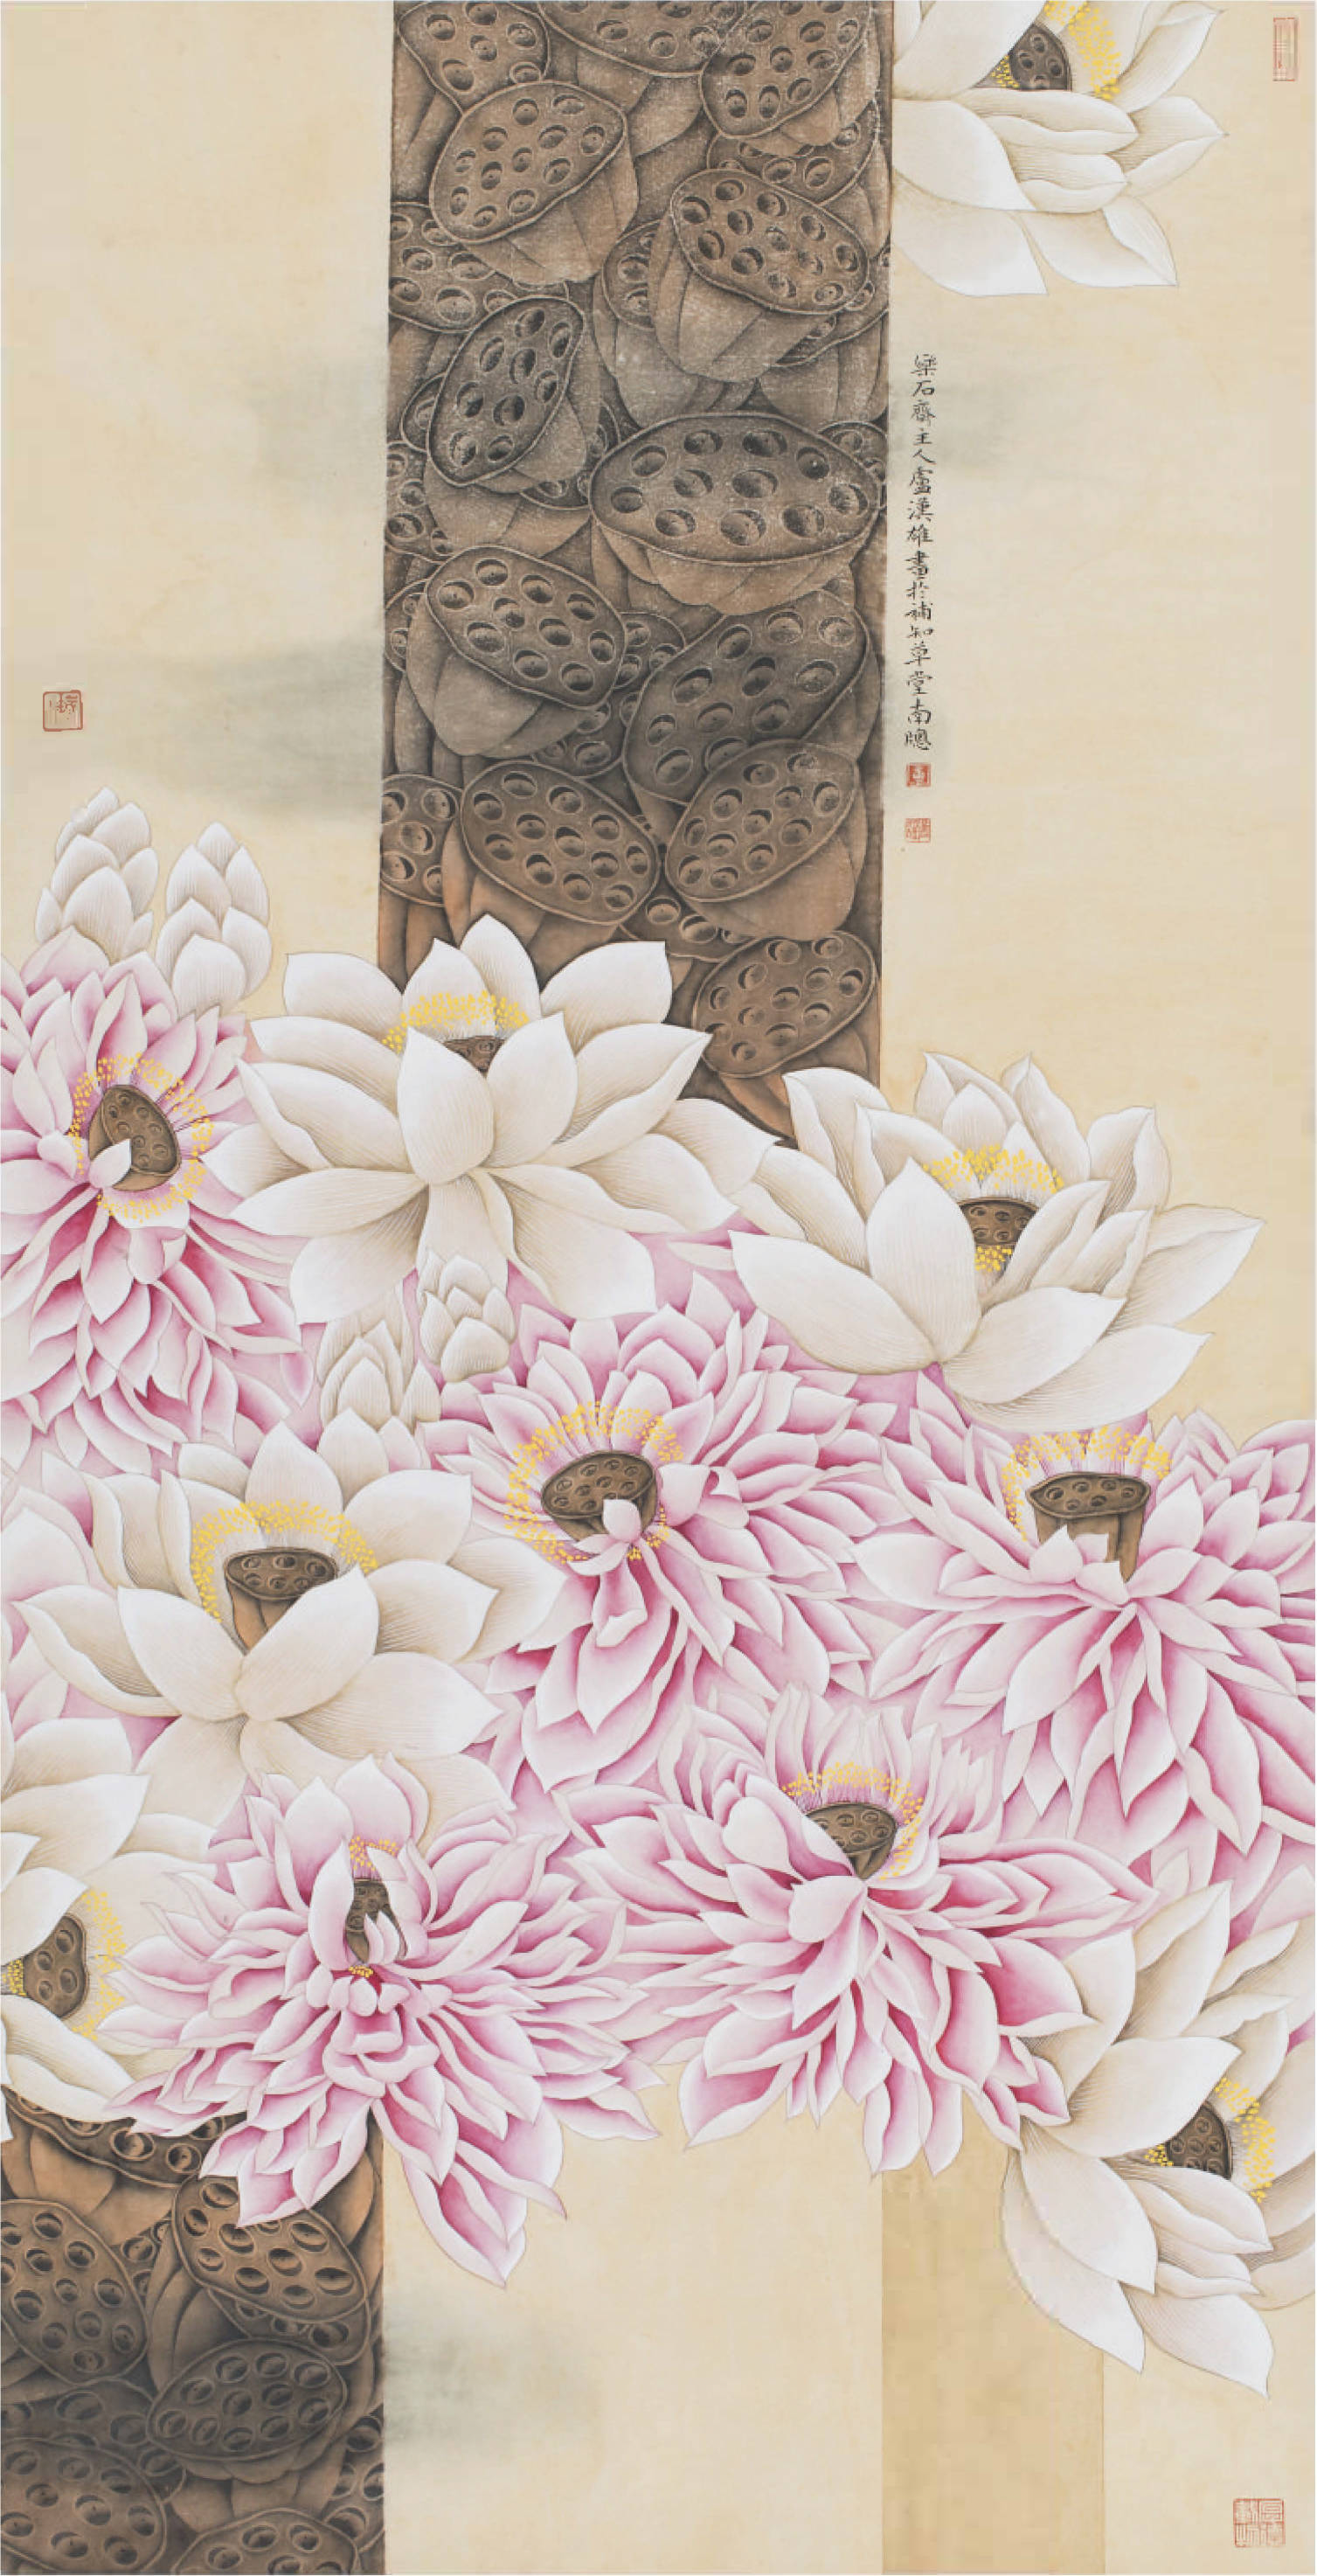 《卢汉雄工笔花鸟画作品集》,多幅作品被美术馆,博物馆及收藏家收藏